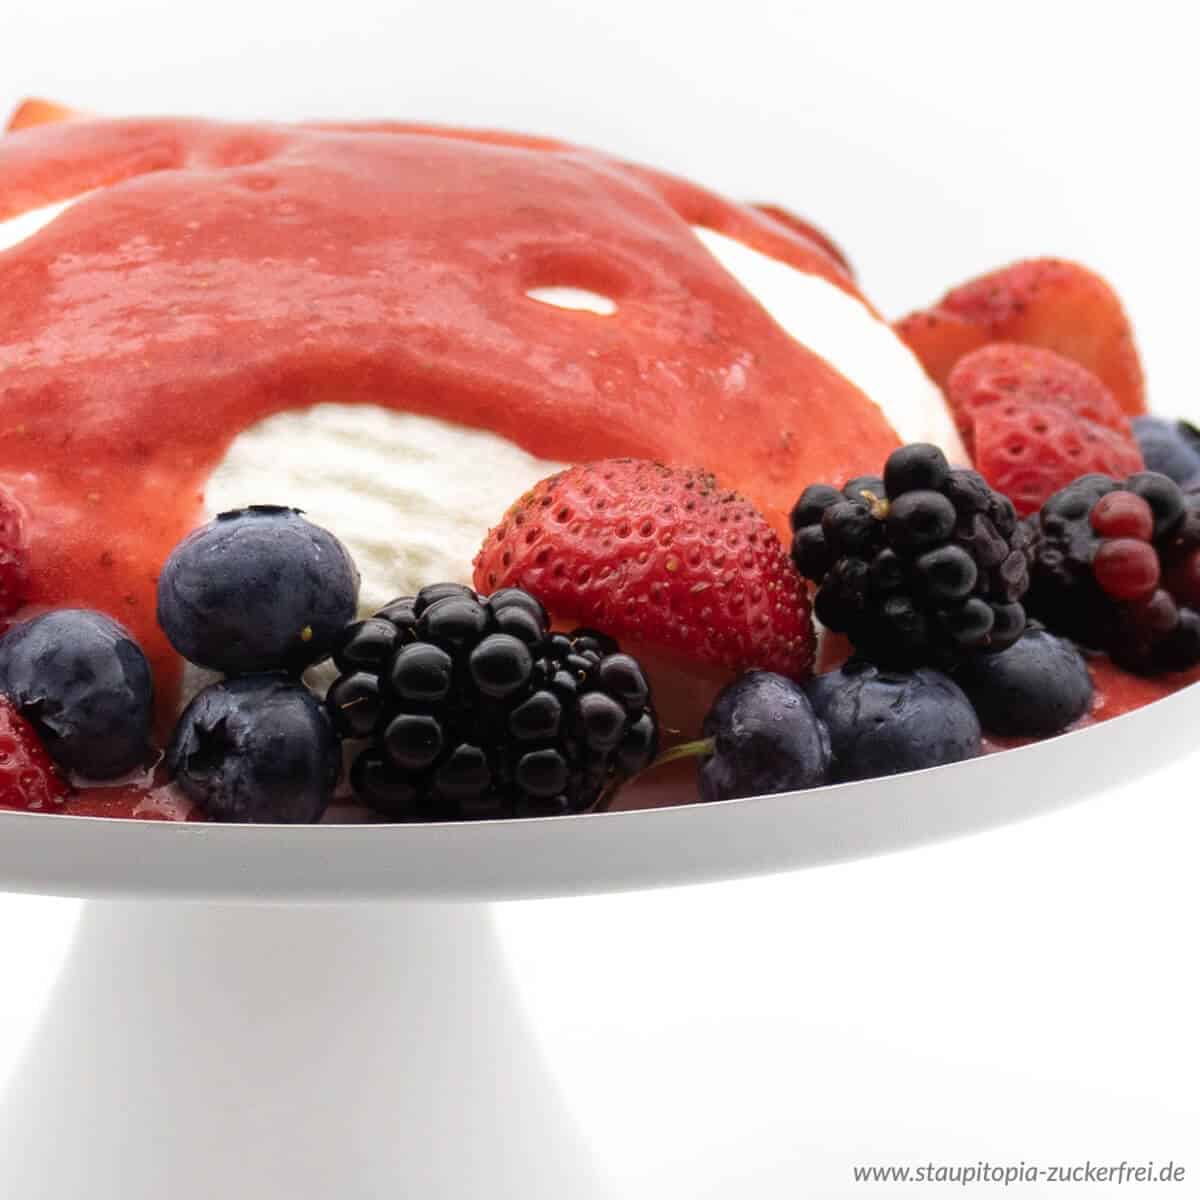 Die Low Carb Joghurt Bombe ist ein einfaches Dessert ohne Zucker, dass sich perfekt für eine gesunde Ernährung eignet. Naschen ohne Reue.